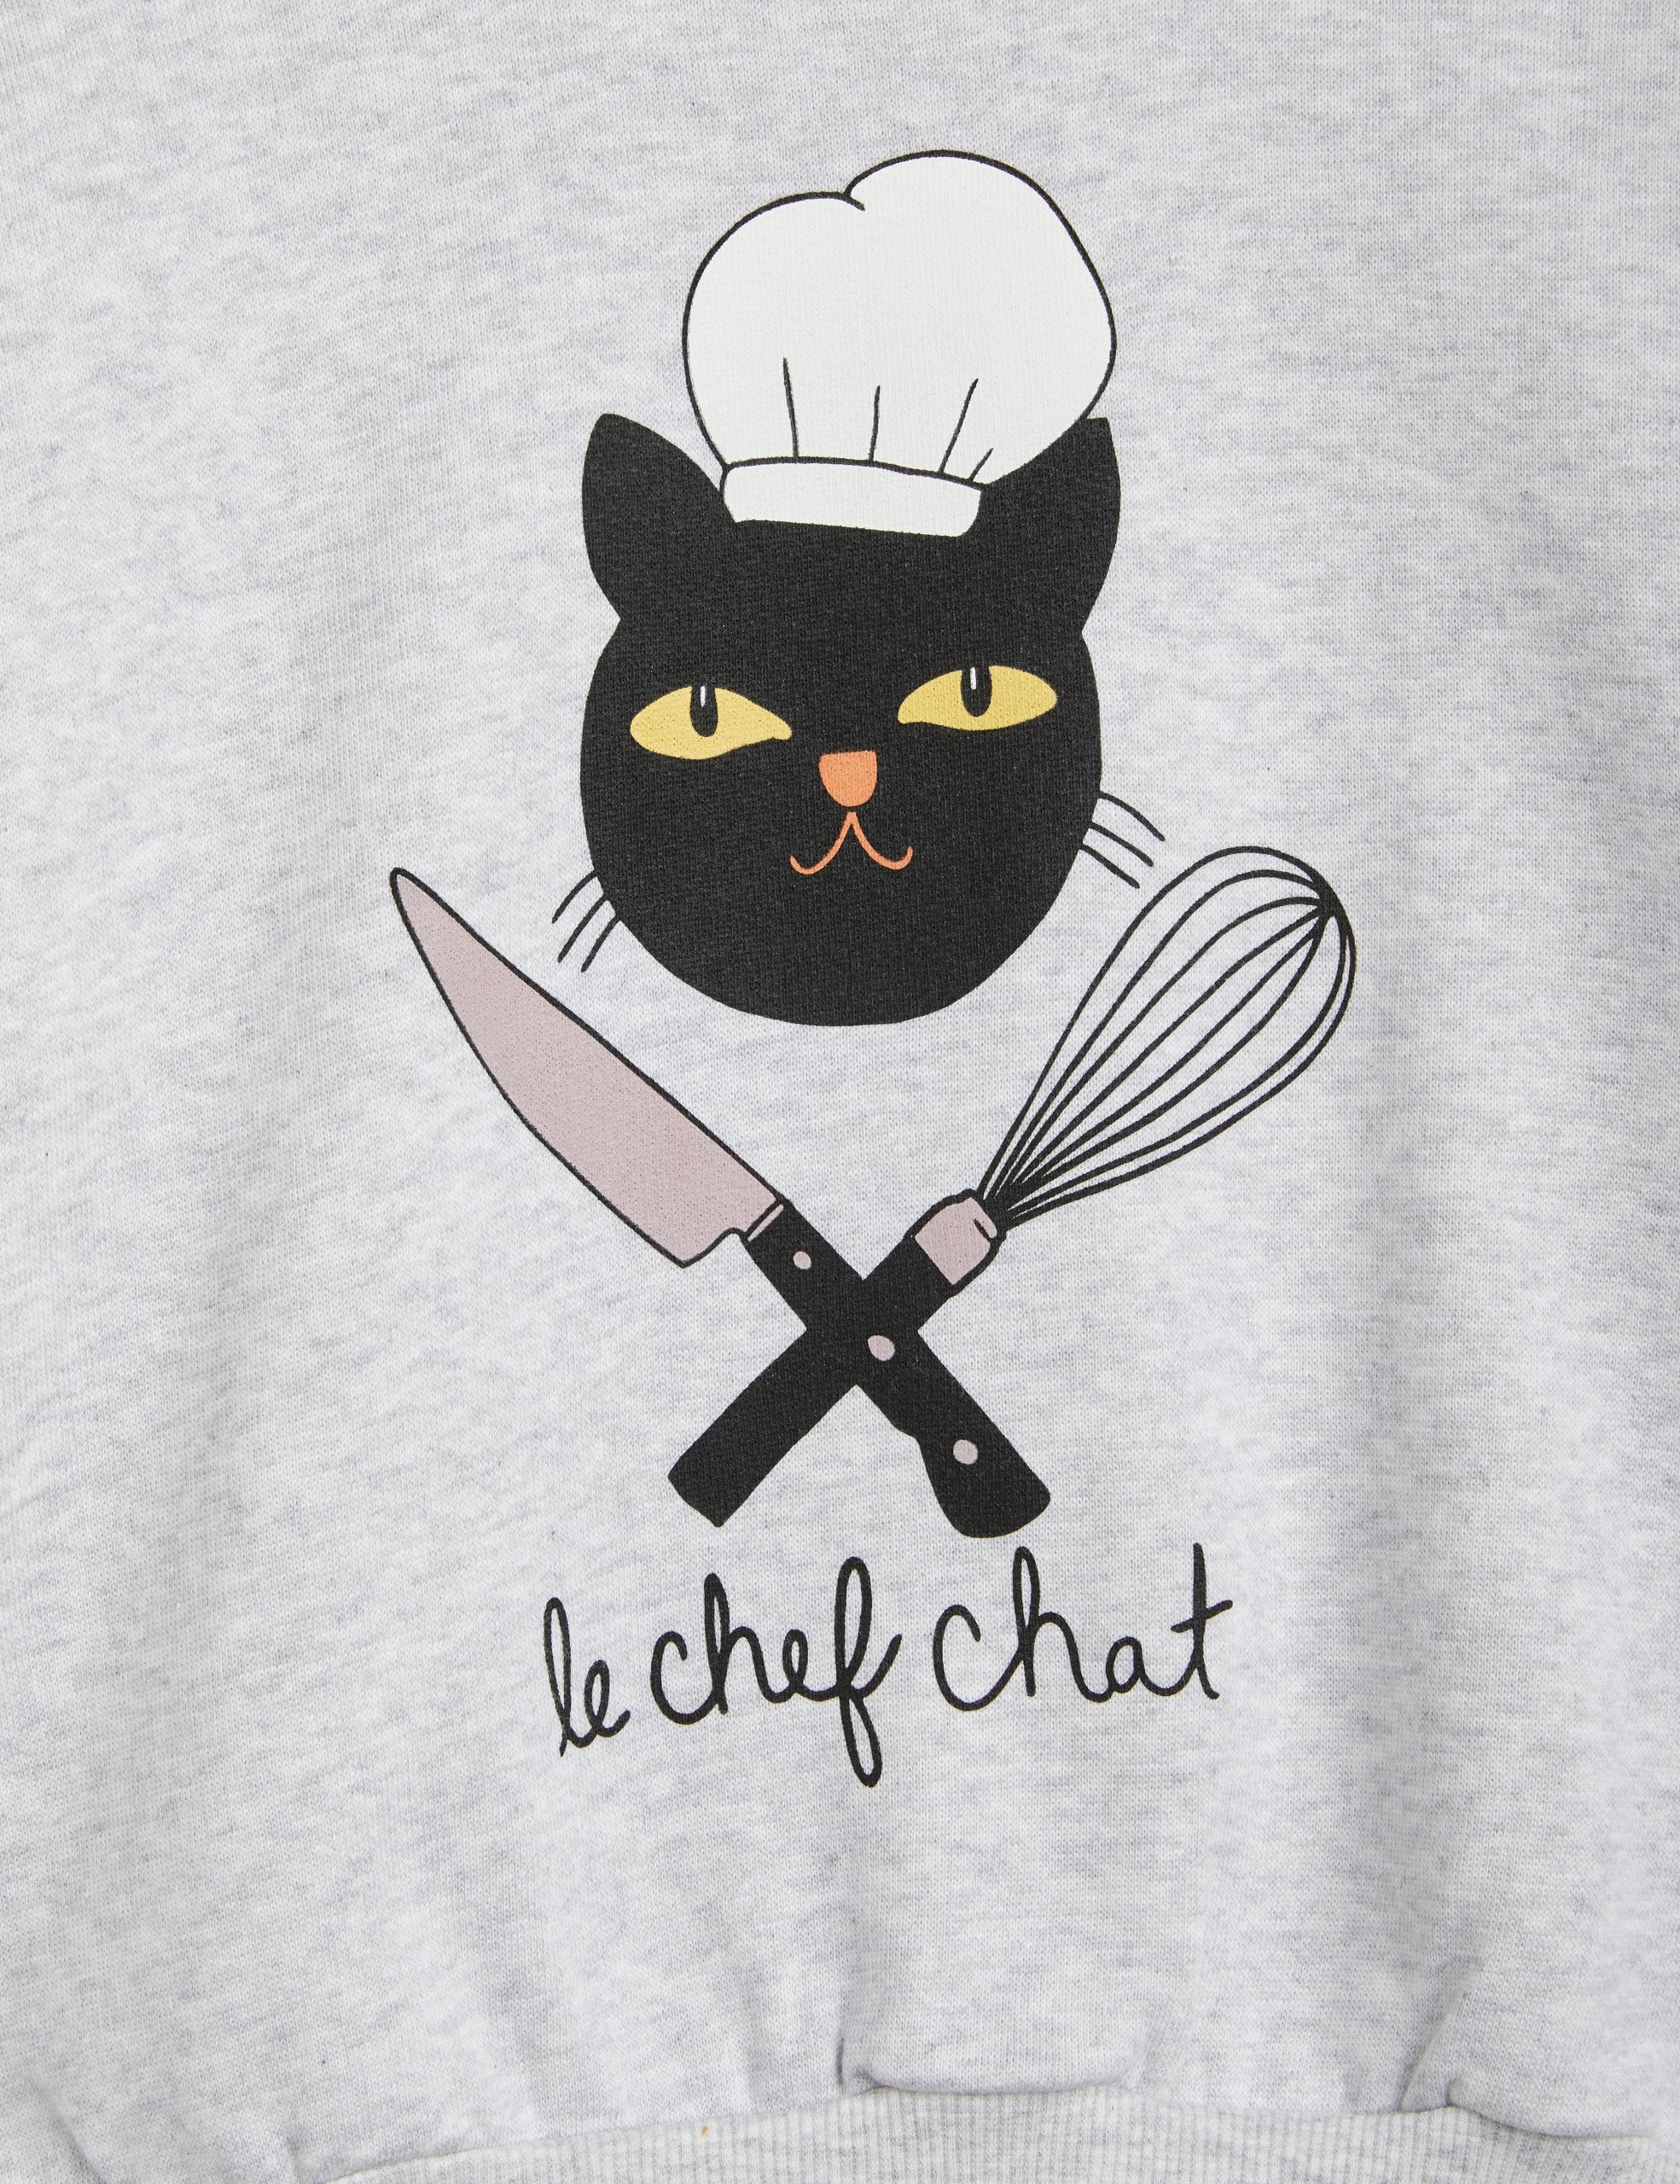 Mini Rodini | Chef cat sweatshirt